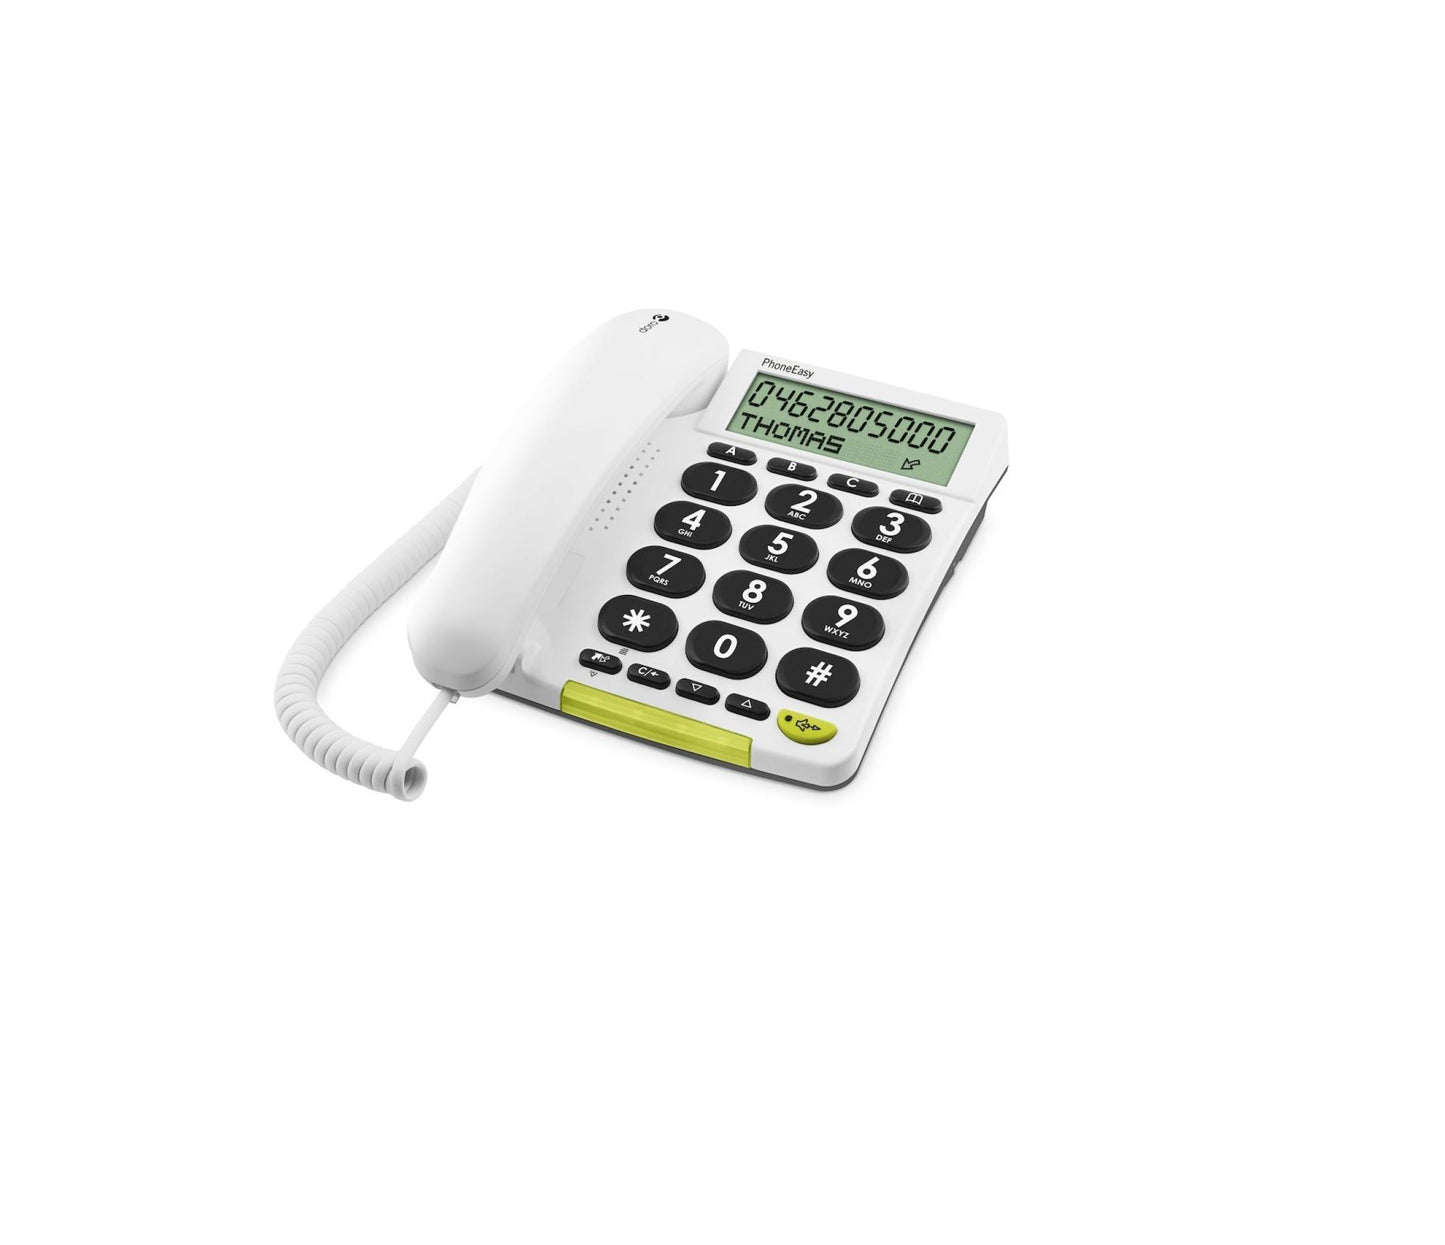 Doro PhoneEasy® 312cs Vaste Seniorentelefoon Kopen van  Doro?- Vanaf €58.95 bij Pucshop.nl